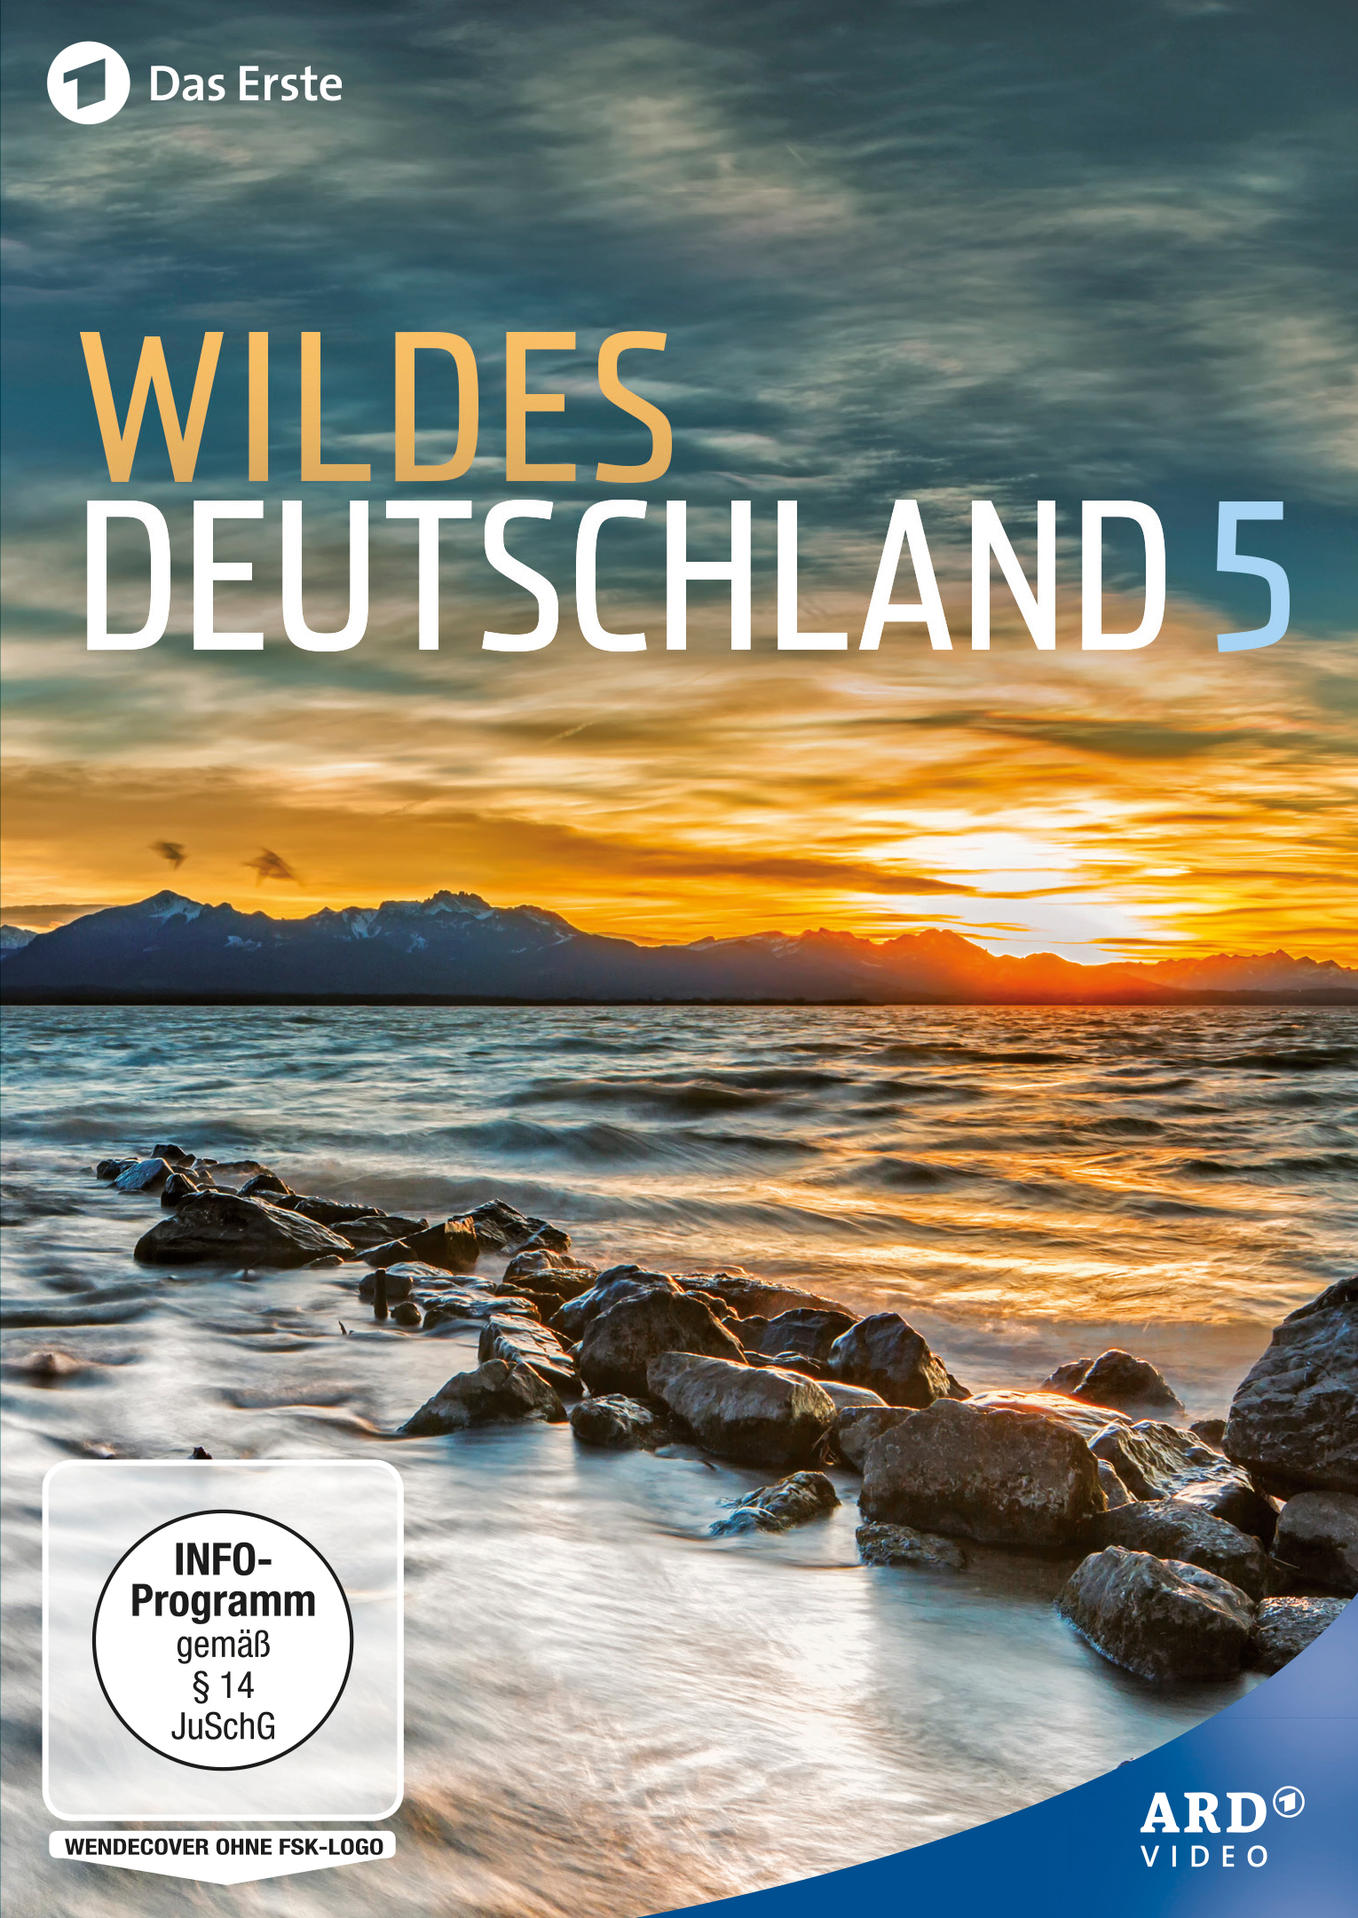 Wildes 5 Deutschland DVD